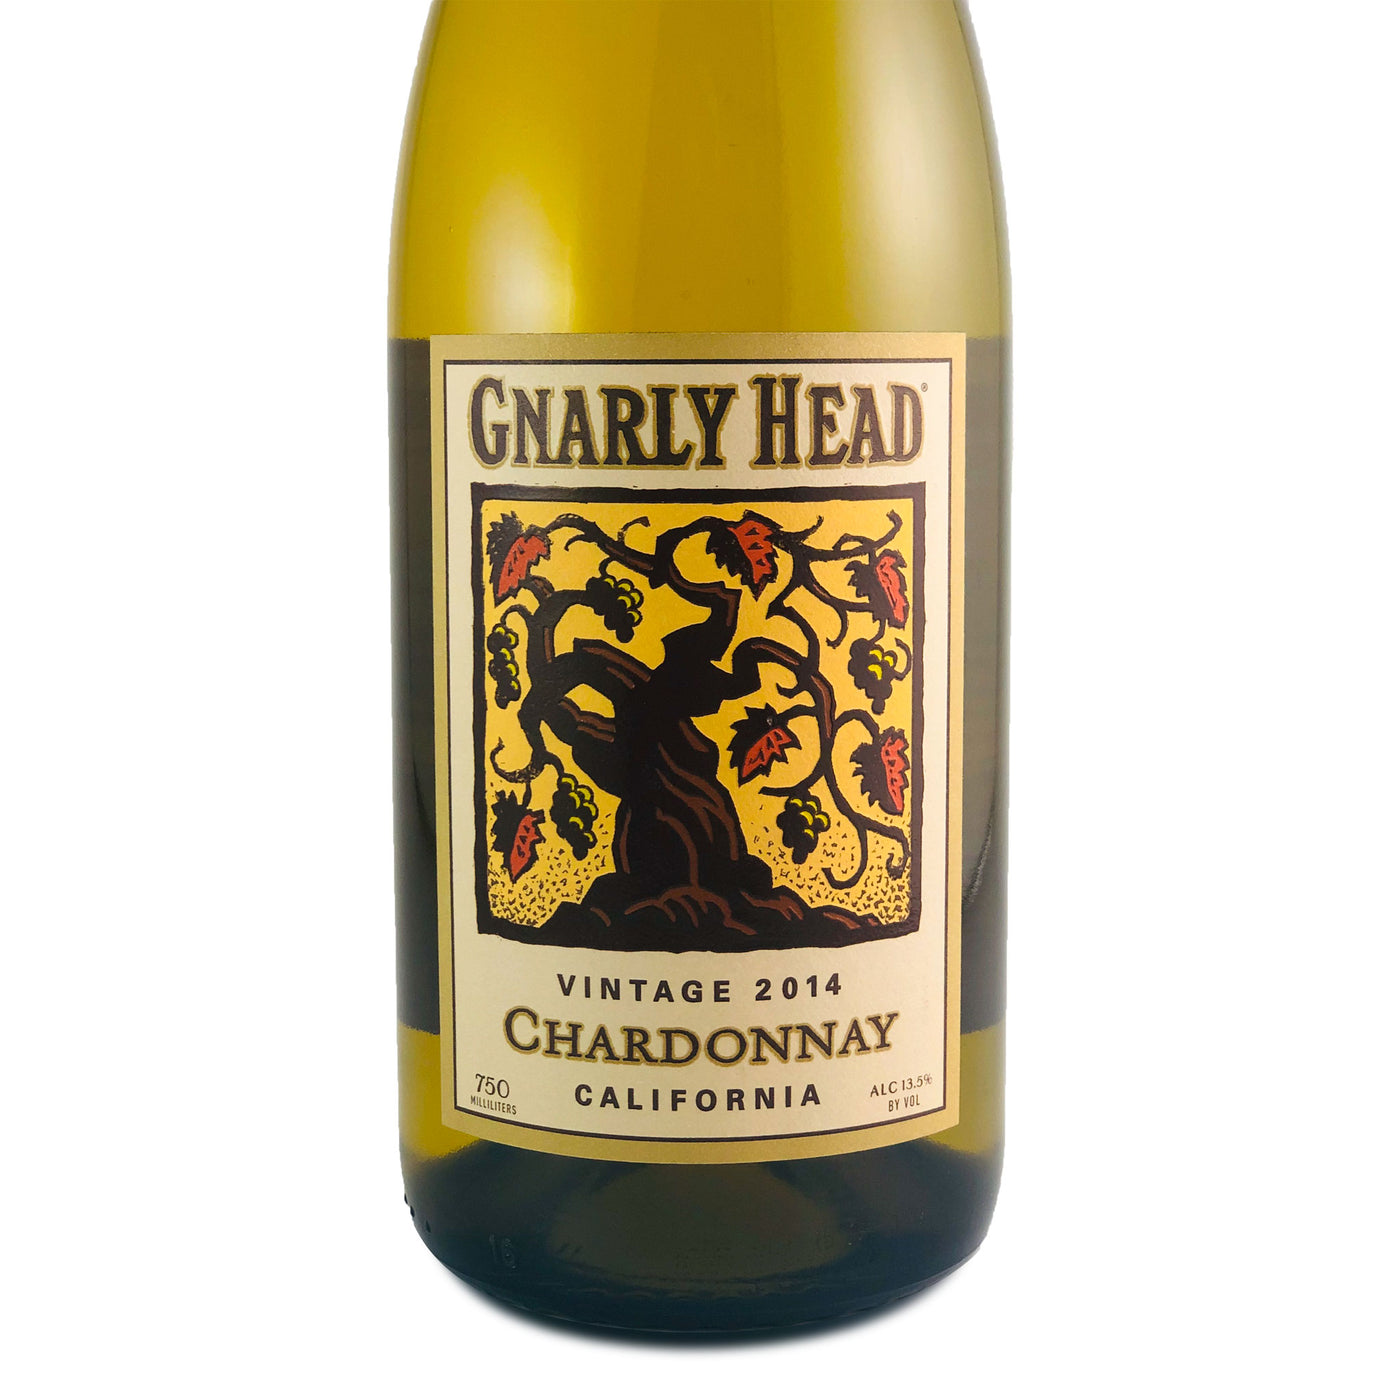 Gnarly Head Chardonnay 2014